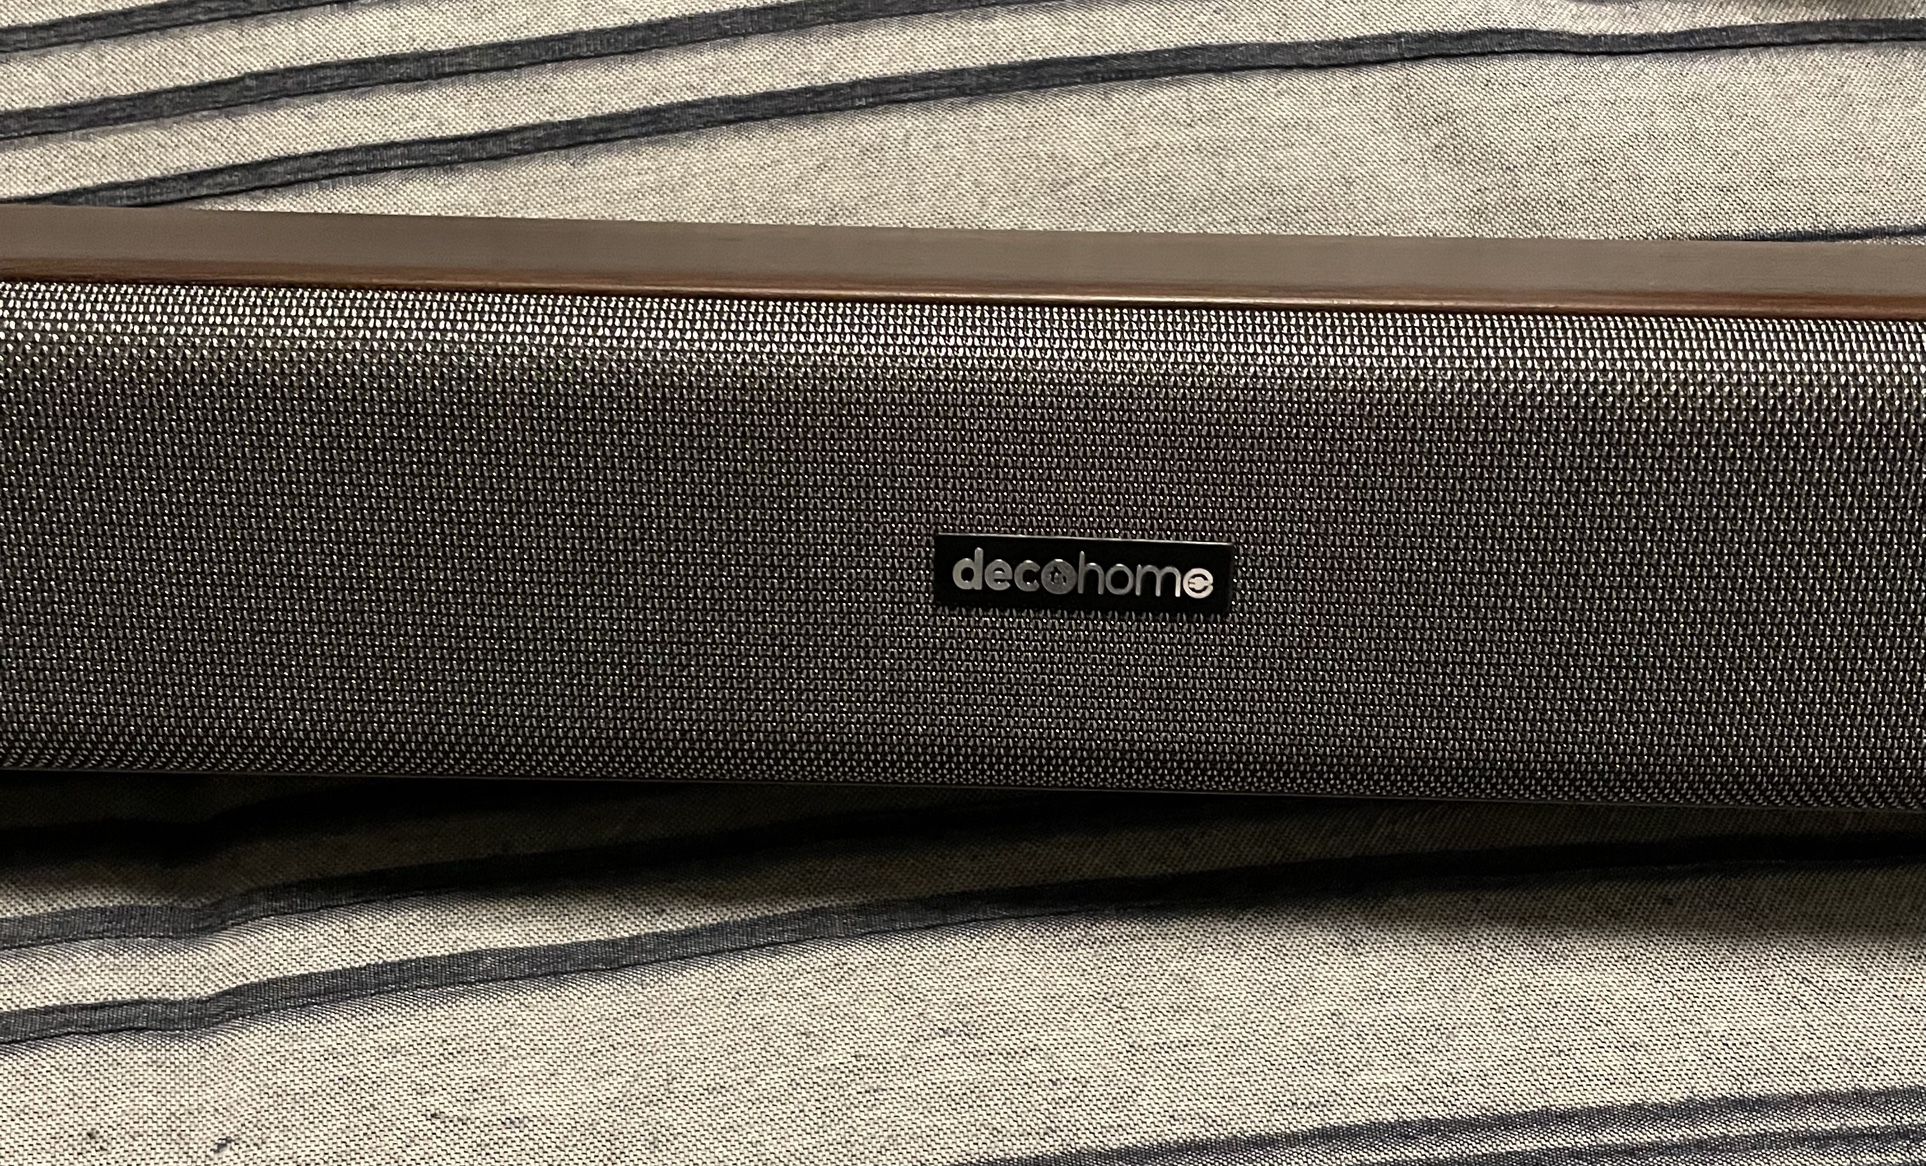 Deco Home Sound Bar